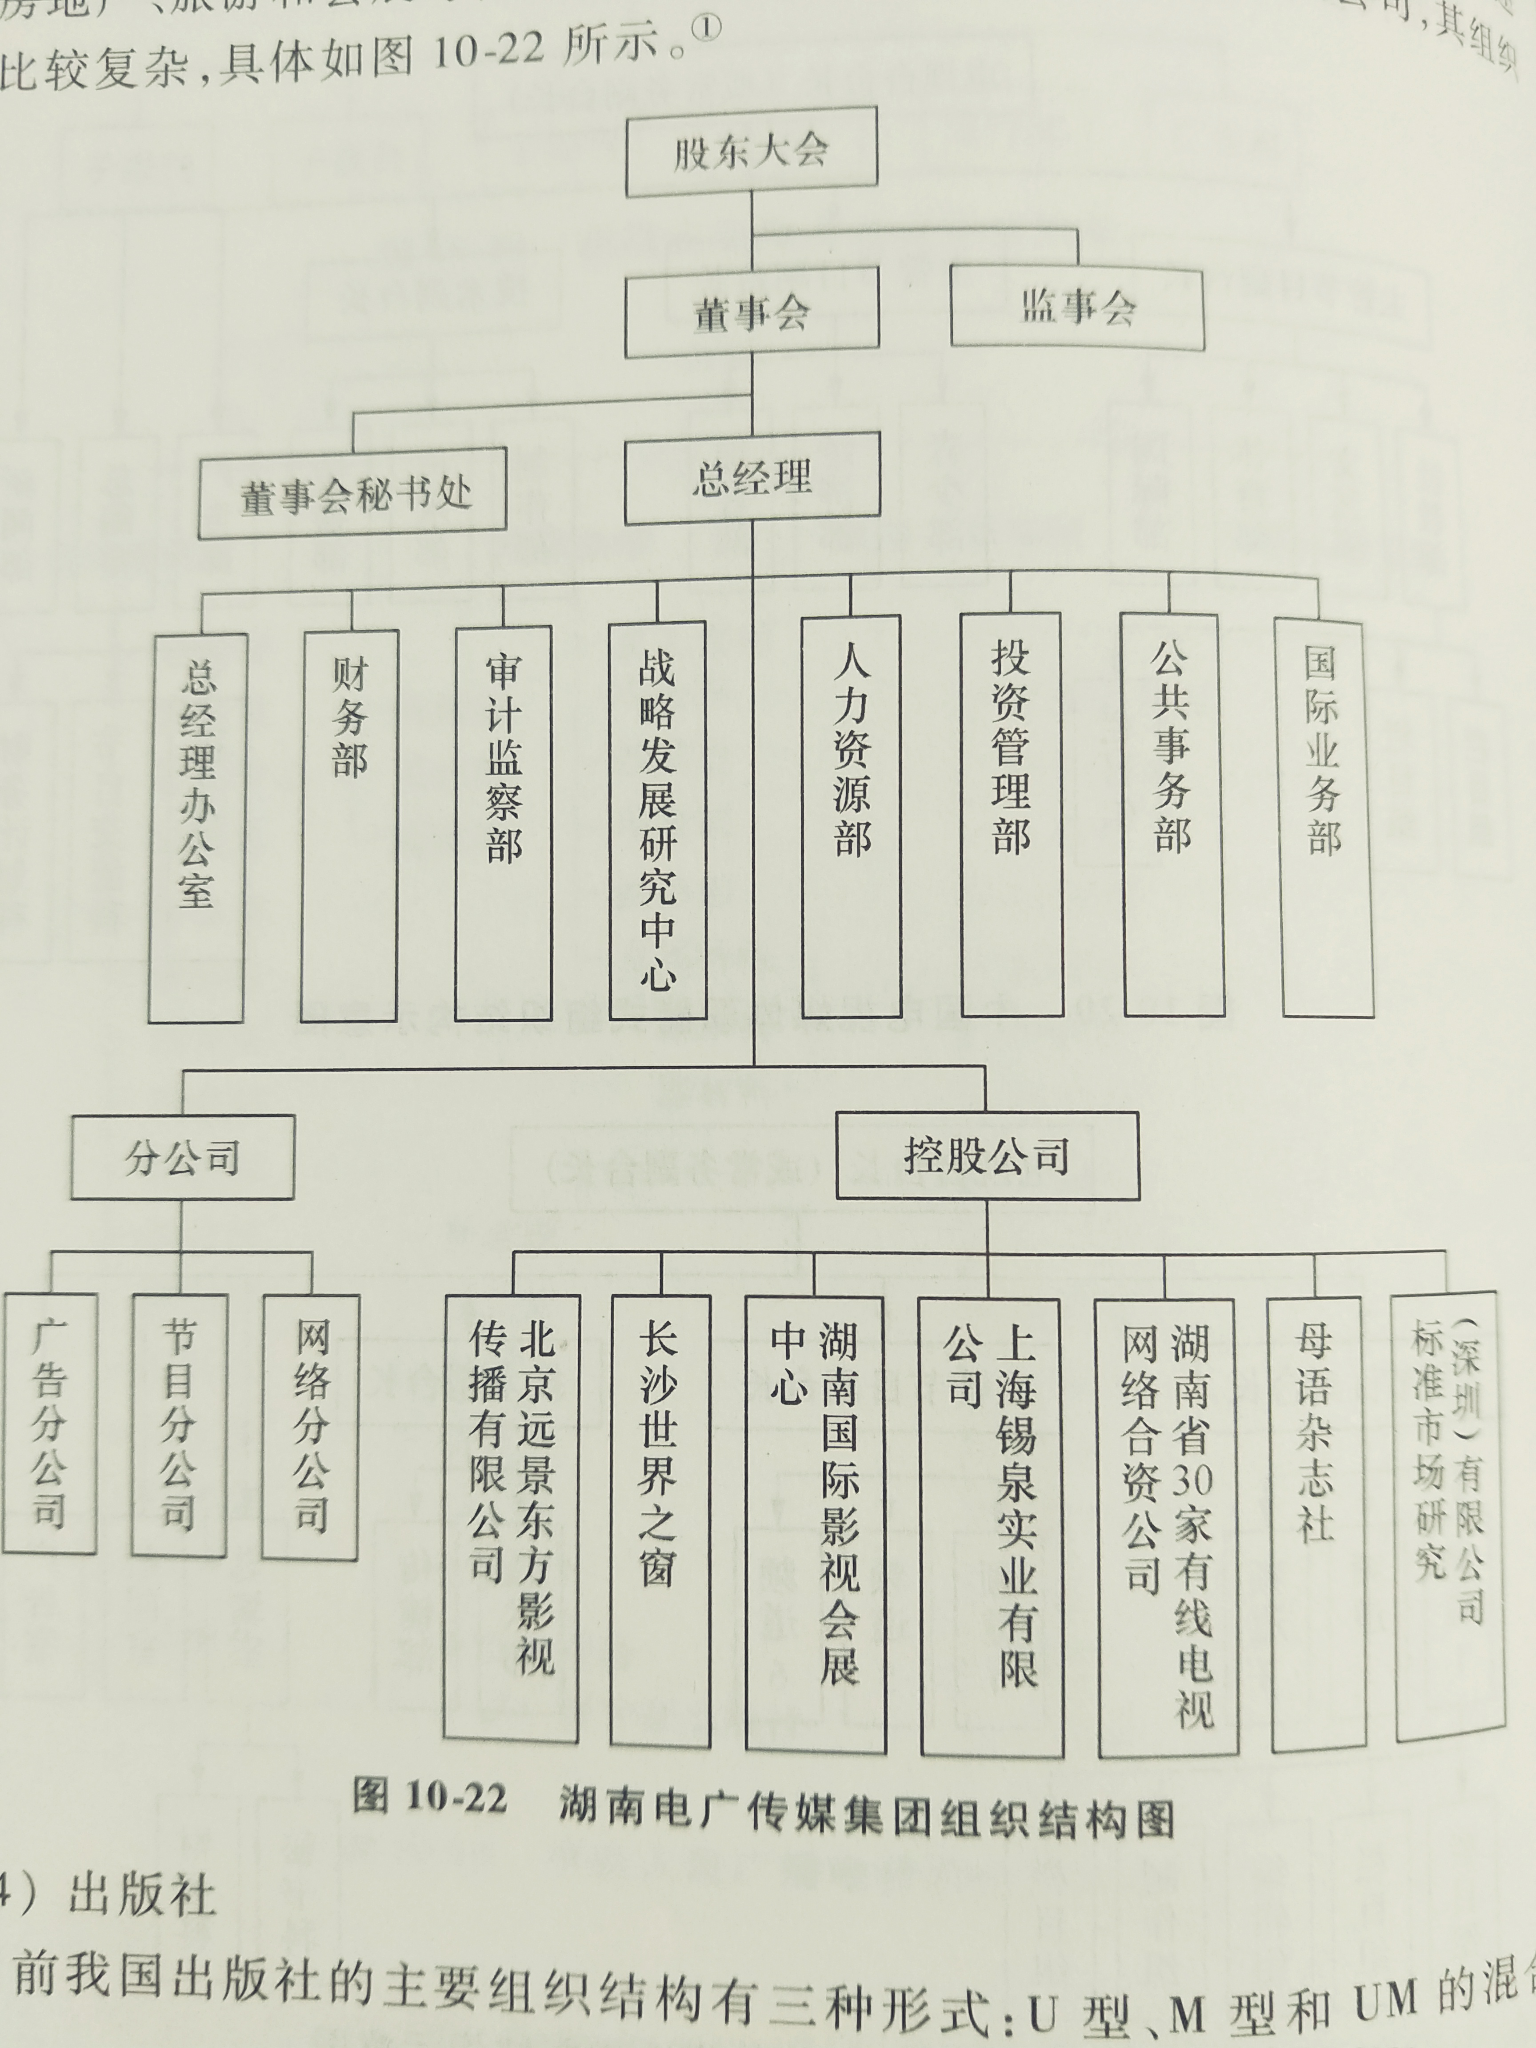 分为多种,中国的话大多是直线型组织结构,湖南广电的话矩阵式组织